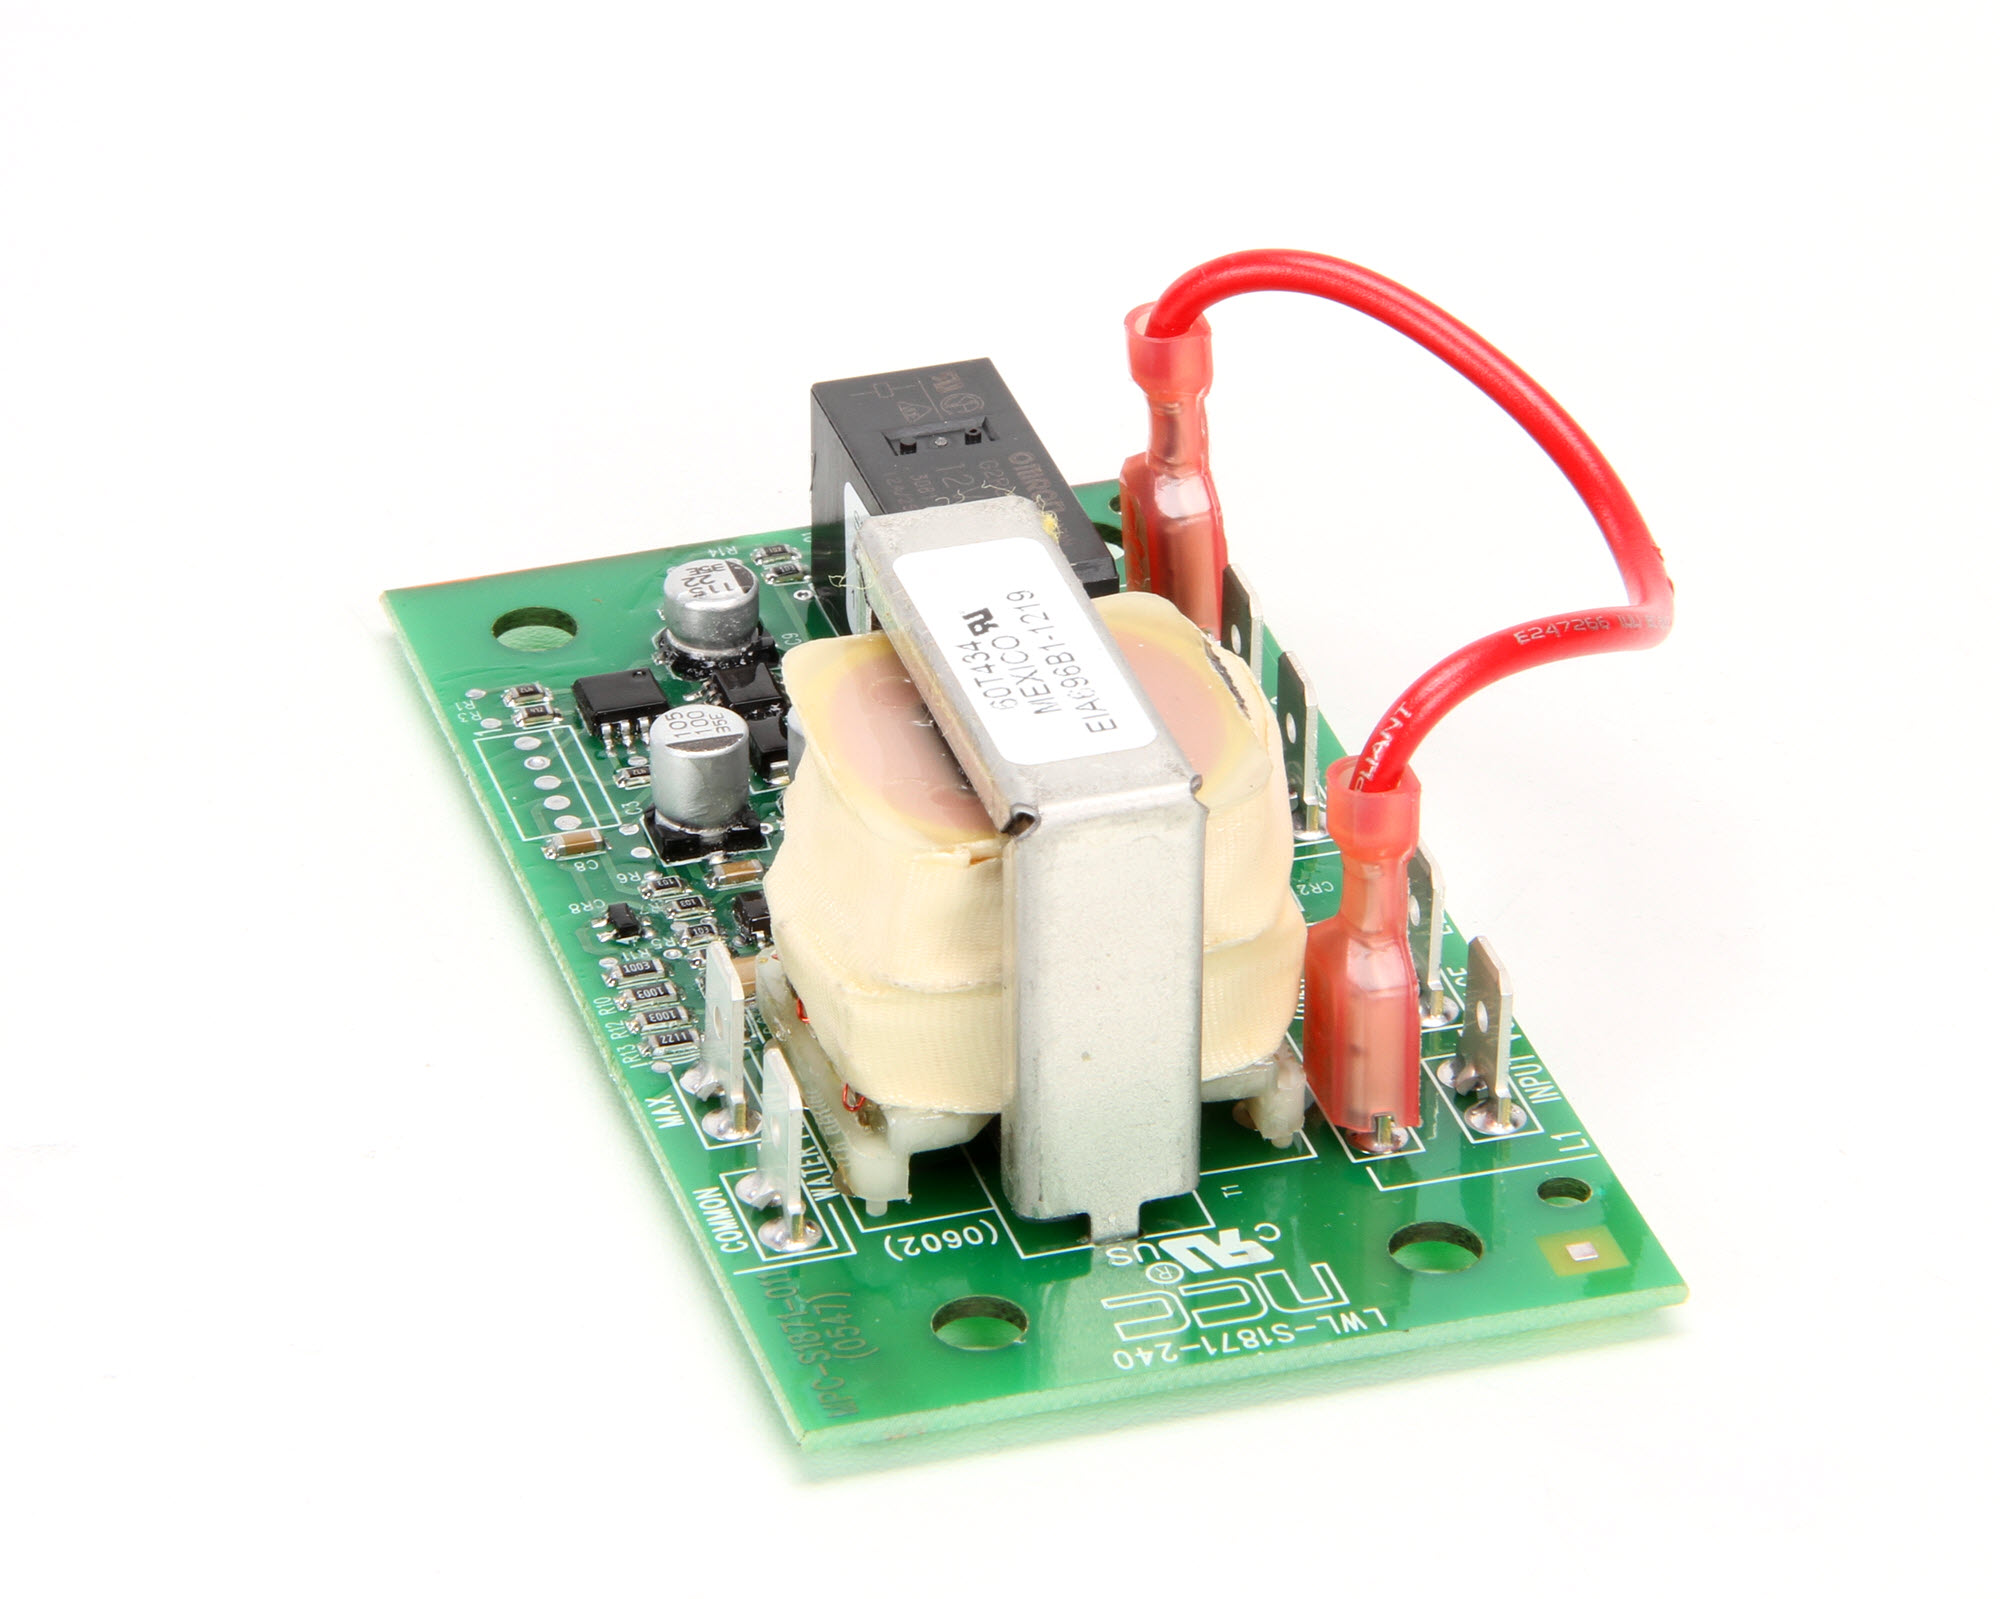 650md - 5-1342-f-ac Industrial 650 nm 5mW láser rojo punto módulo con adaptador de CA 13 x 42 mm 3-5VDC